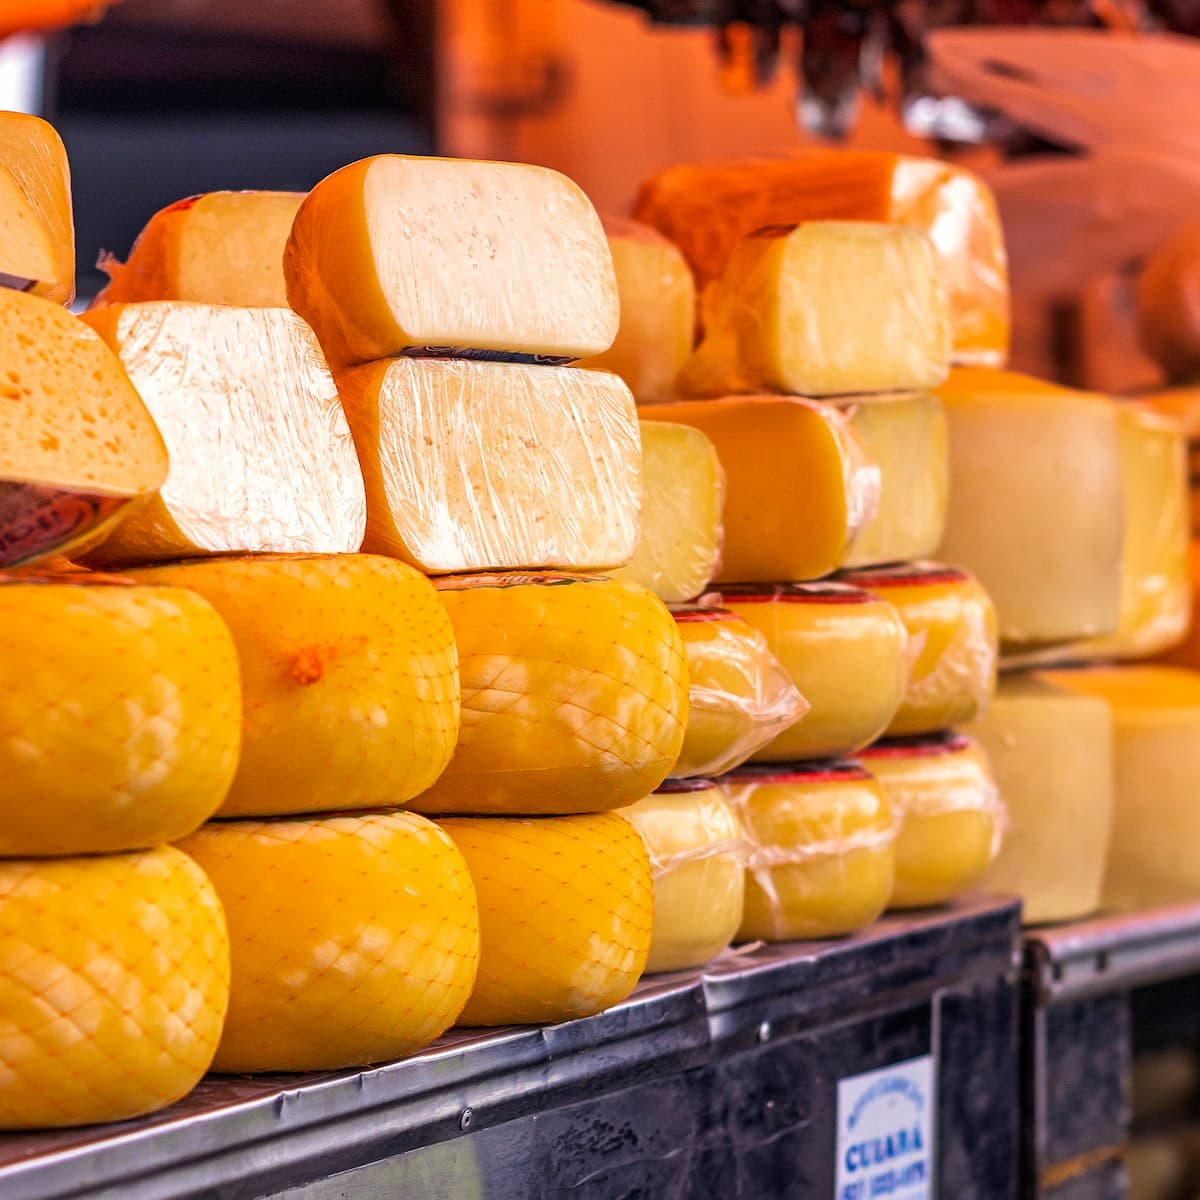 Imagem meramente ilustrativa de queijos, produzidos em uma Queijaria. Φωτογραφία: Leandro Bezerra.